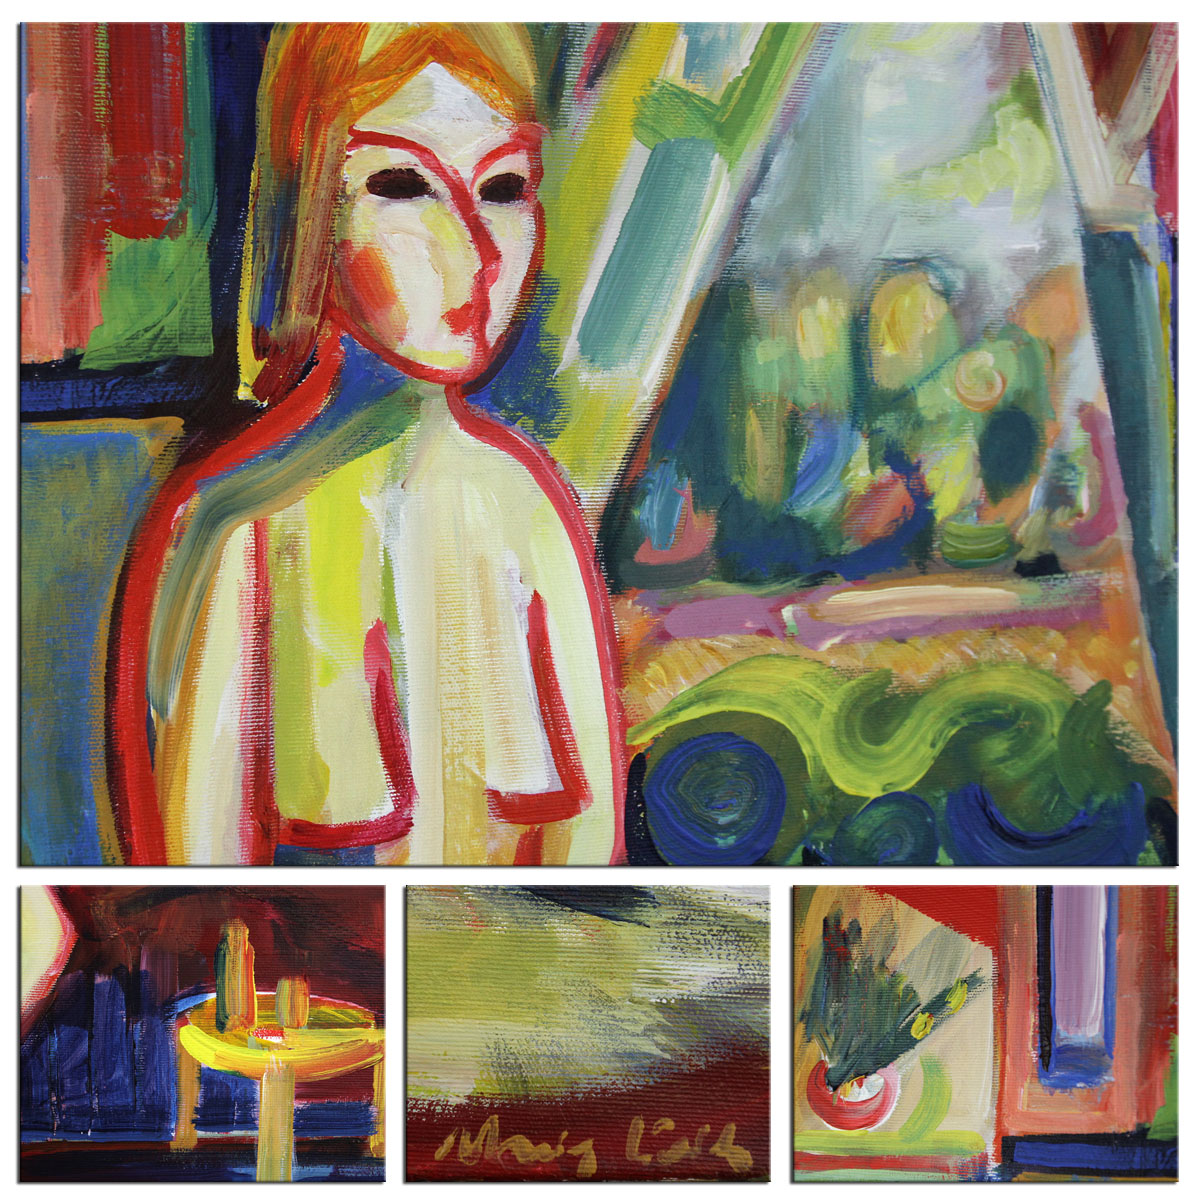 Expressionistische Ölmalerei, Maciej Cieśla: "Mädchen am Fenster"